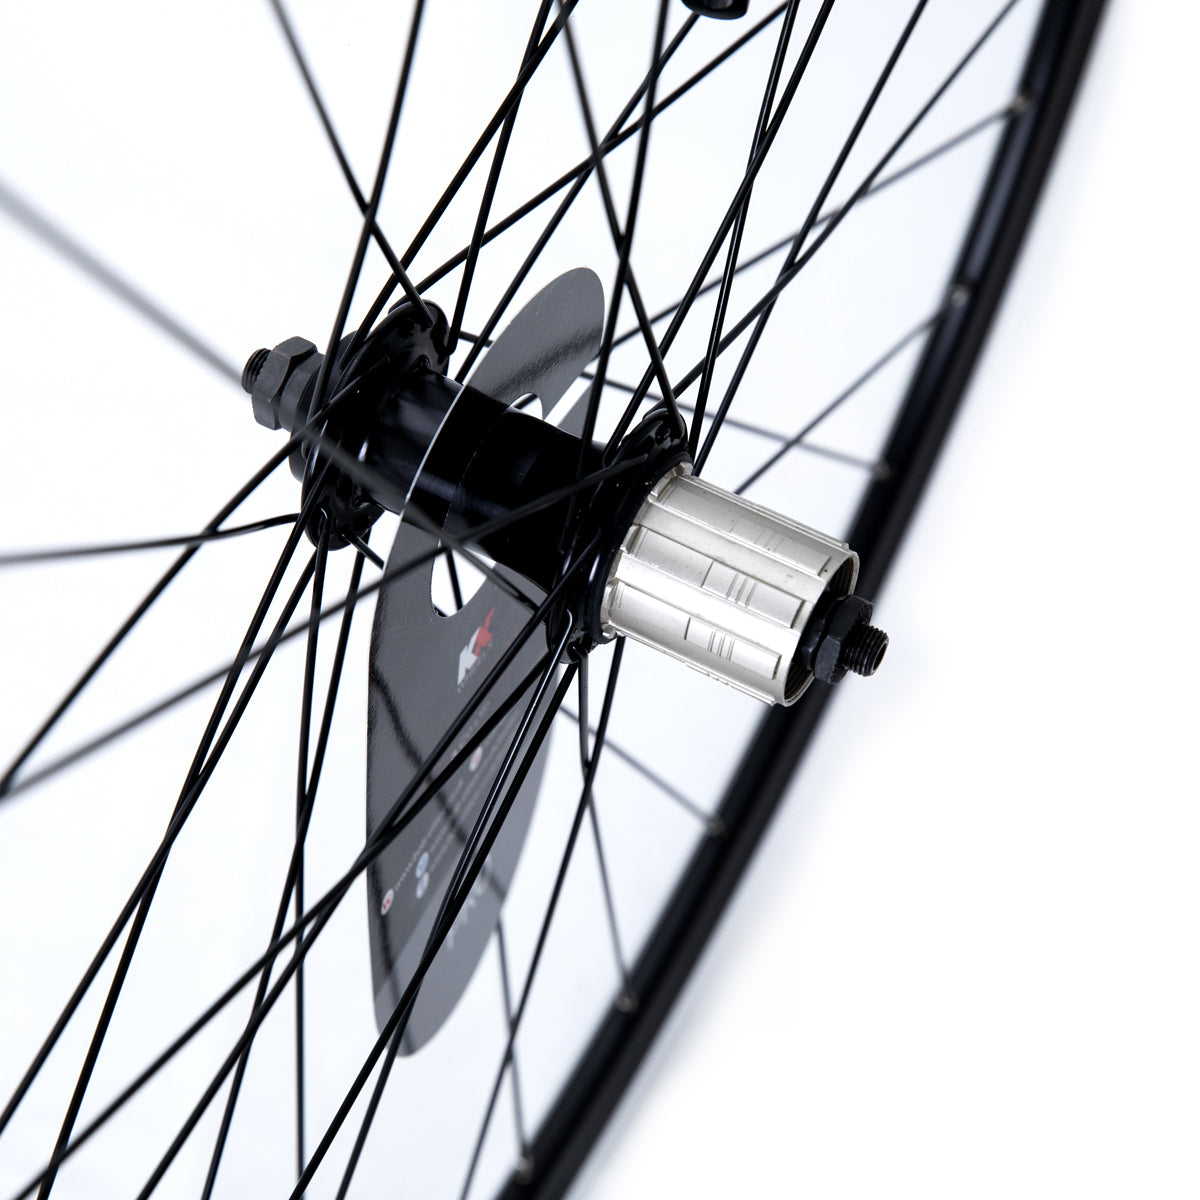 KX Wheels Pro QR Sealed Bearing 11 Speed 700c Rear Bike Wheel Alternate 1